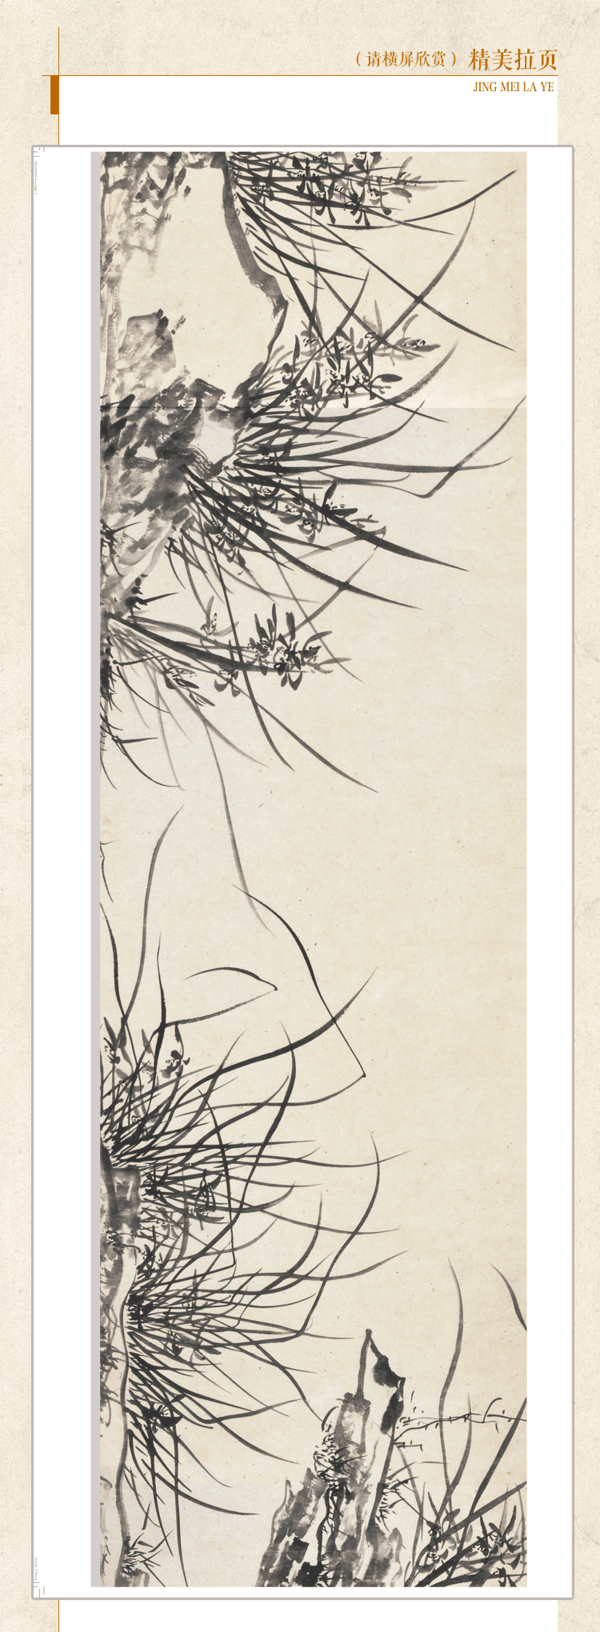 《中国书画》杂志 2021年第1期 南京博物院藏历代花鸟专题